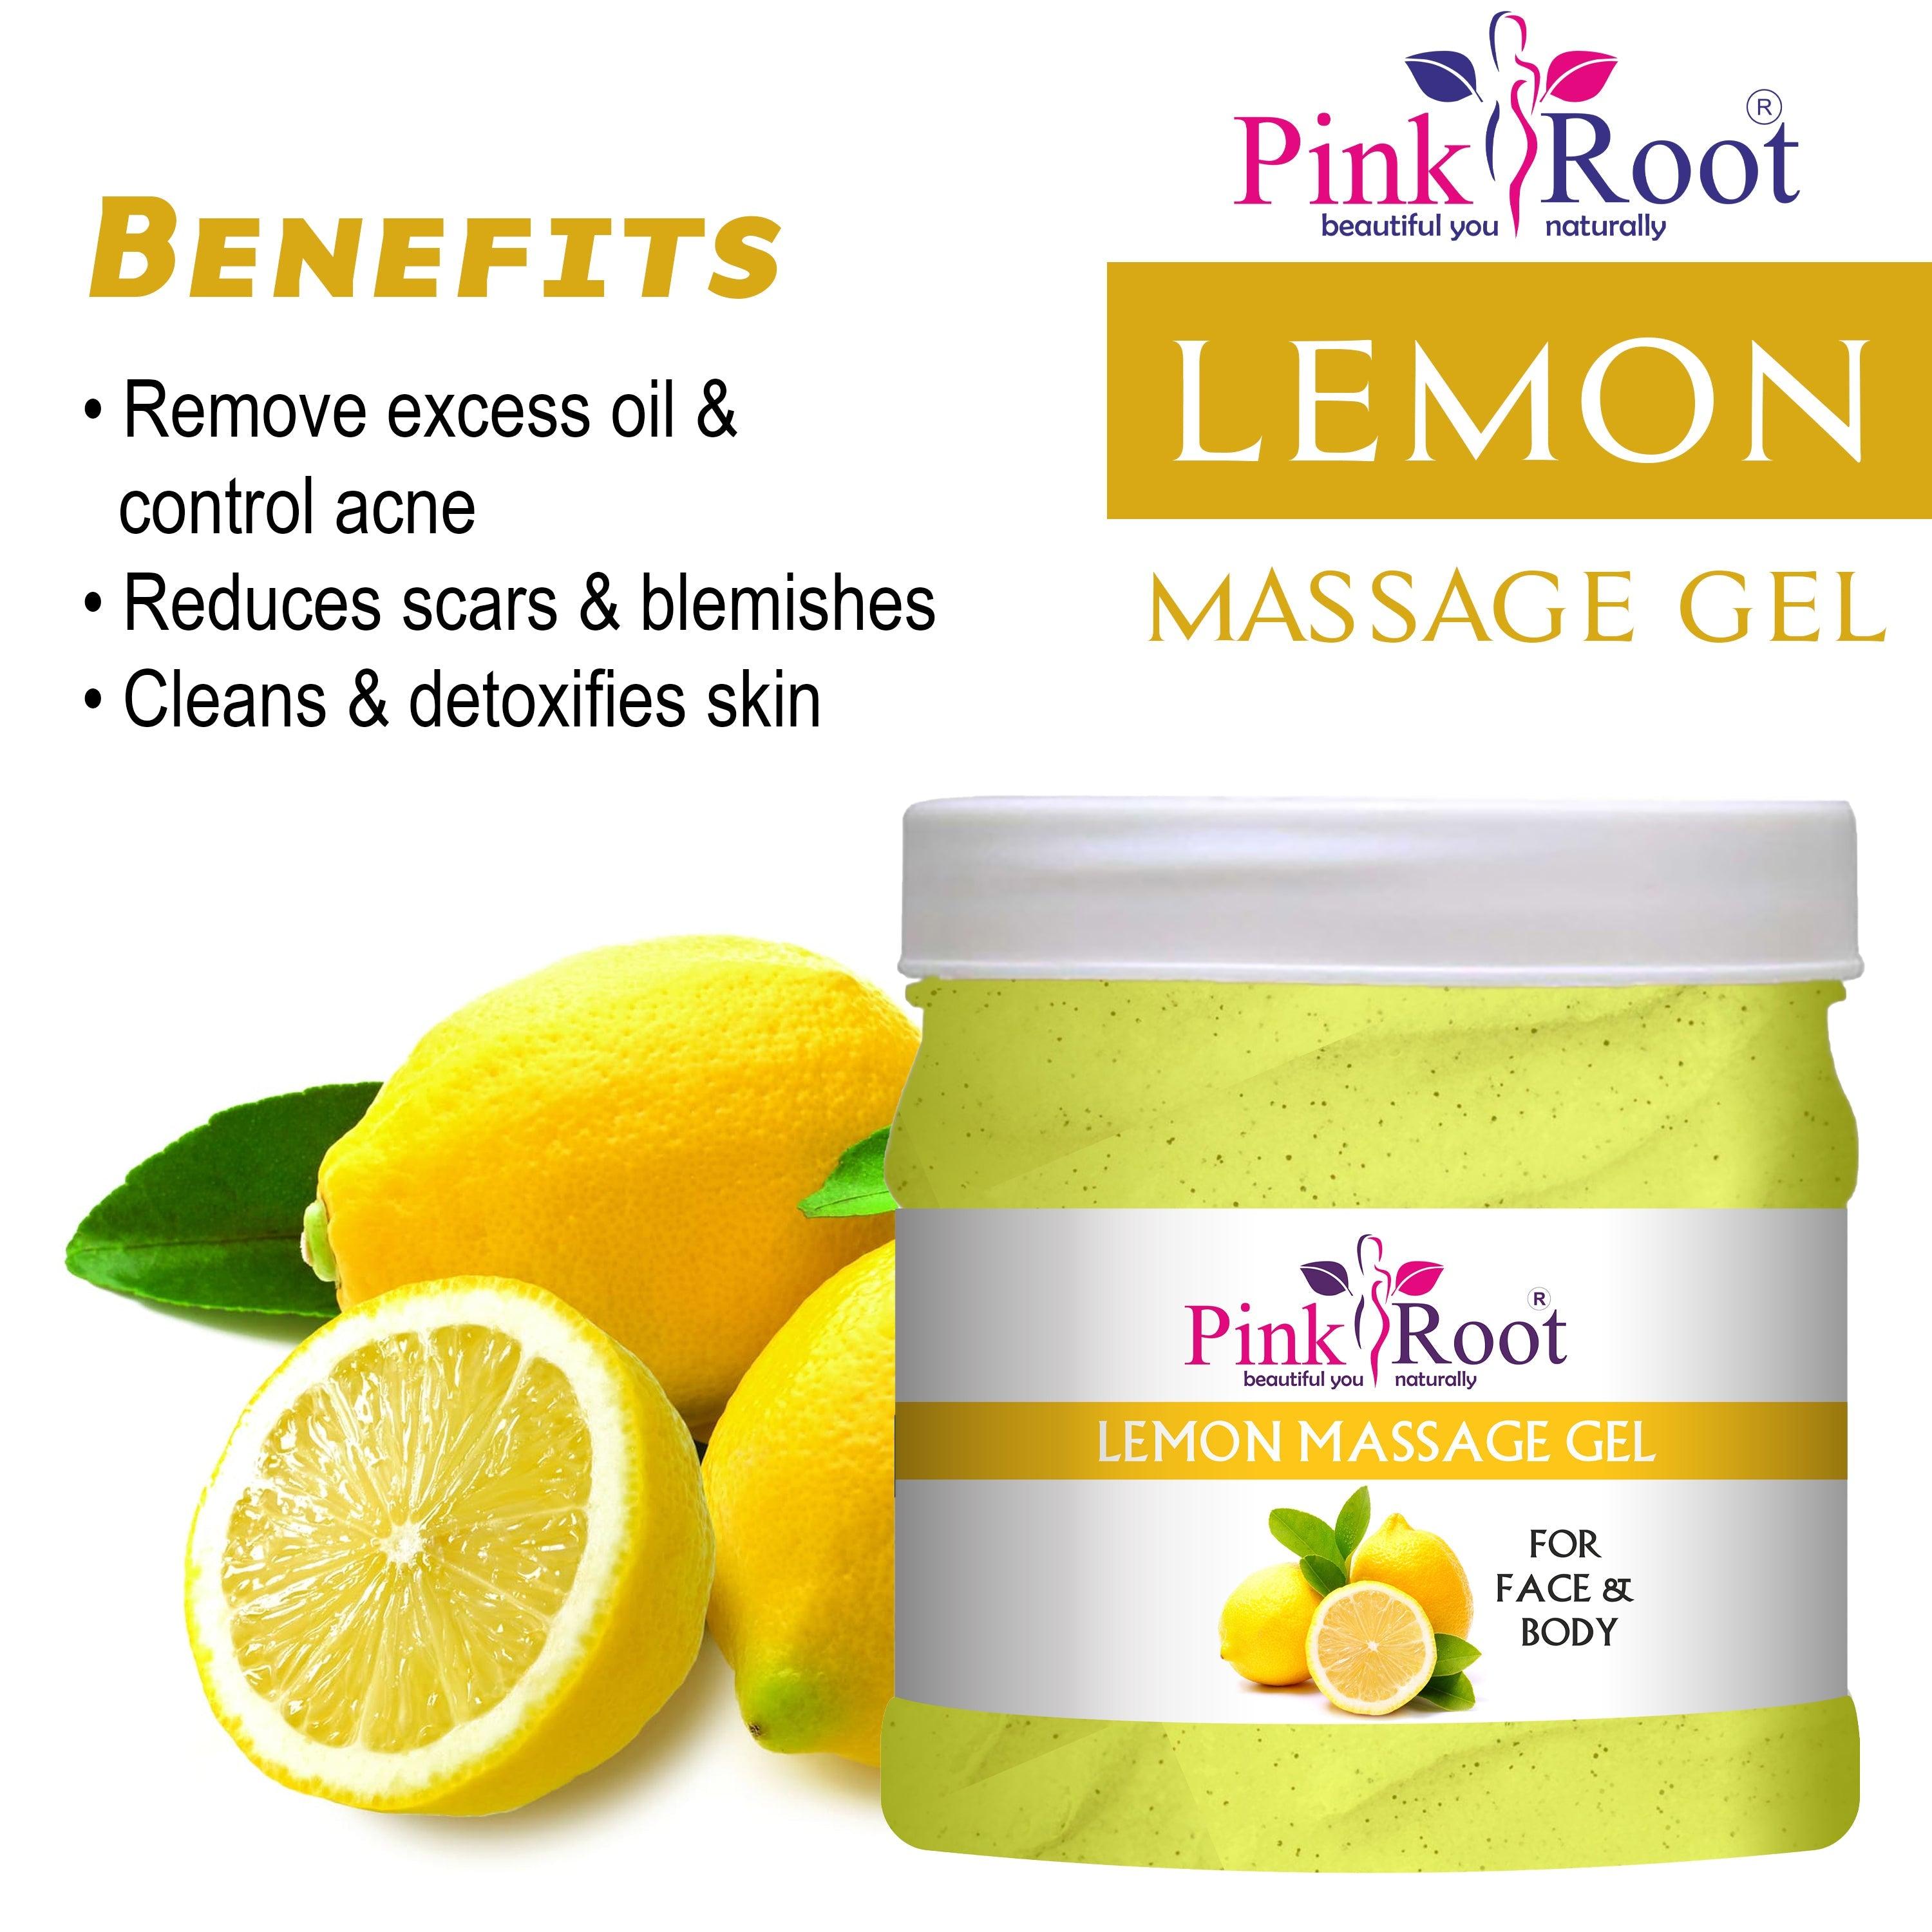 Lemon Massage Gel for Face & Body 500ml - Pink Root